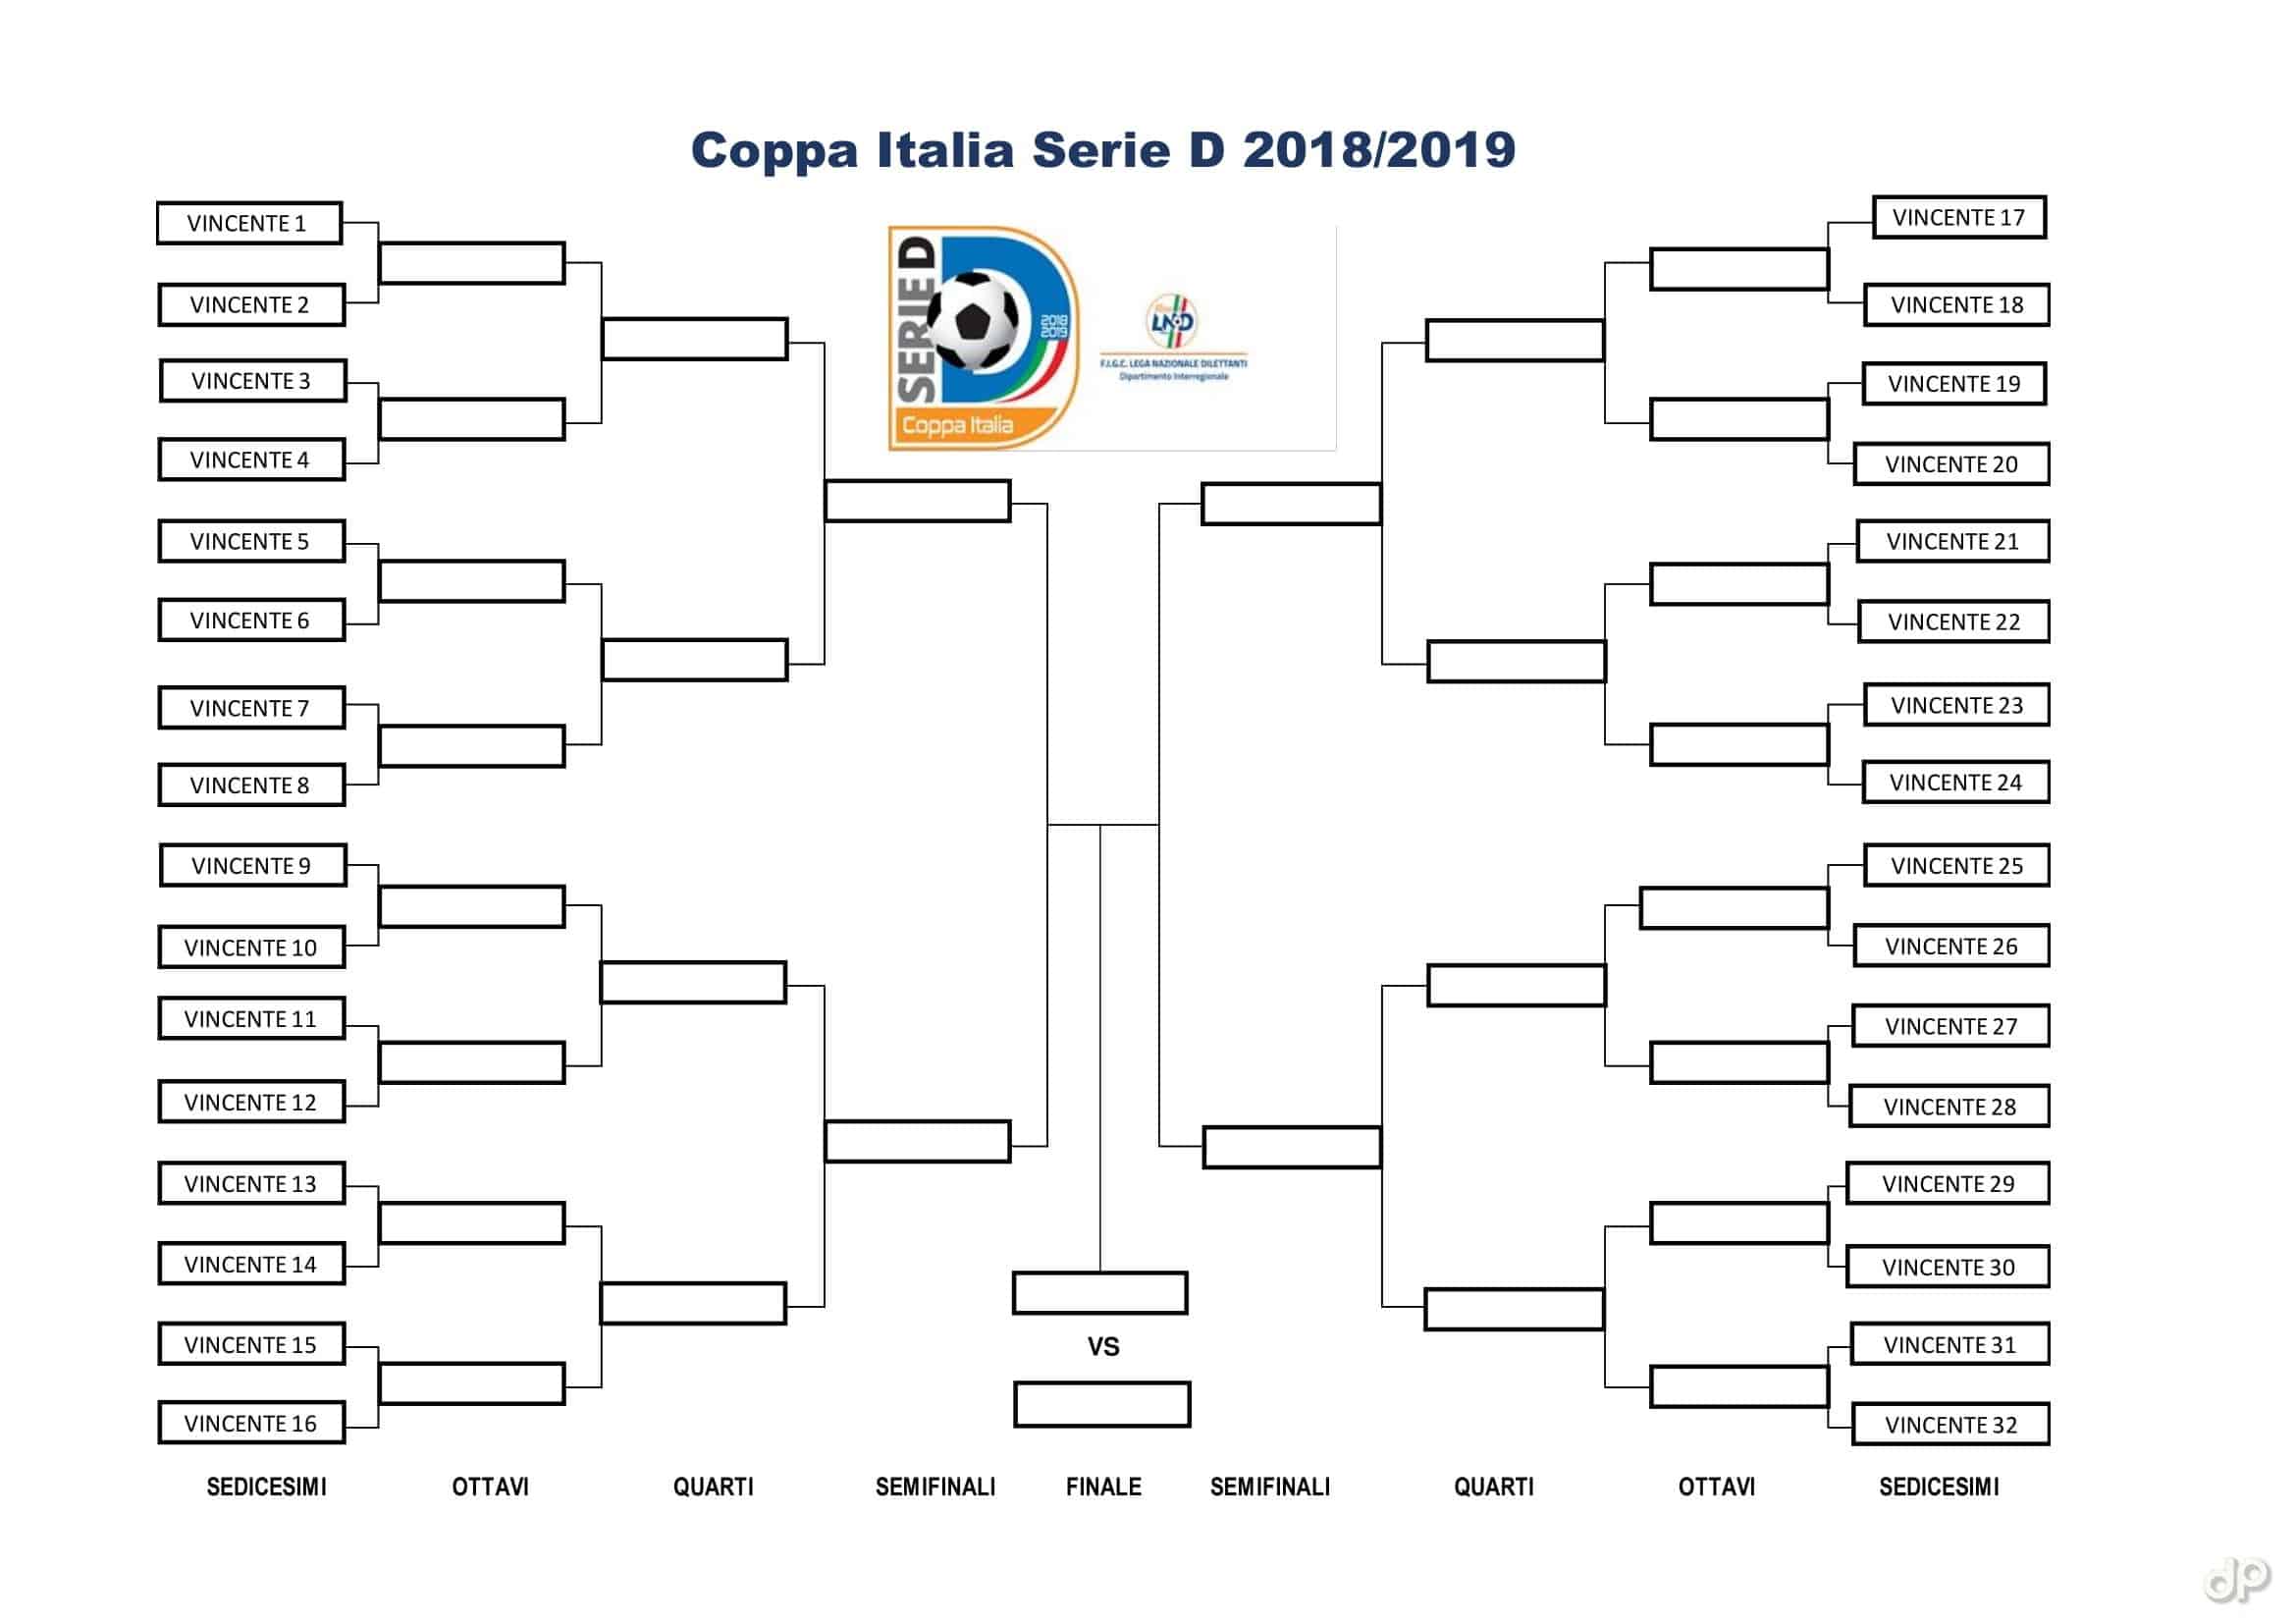 Tabellone Coppa Italia Serie D 2018/19